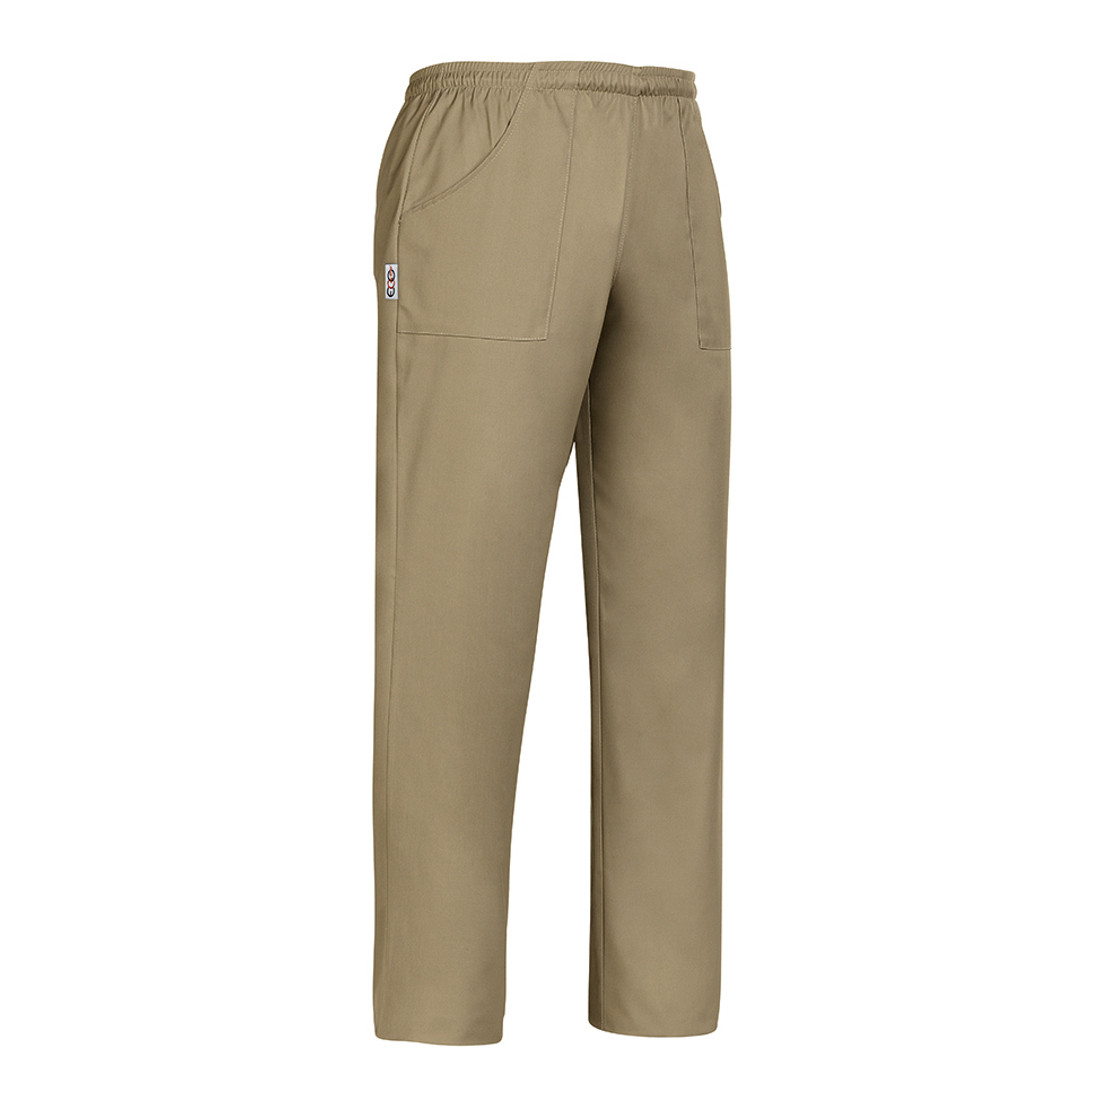 Pantalon Coulisse Pocket - Les vêtements de protection